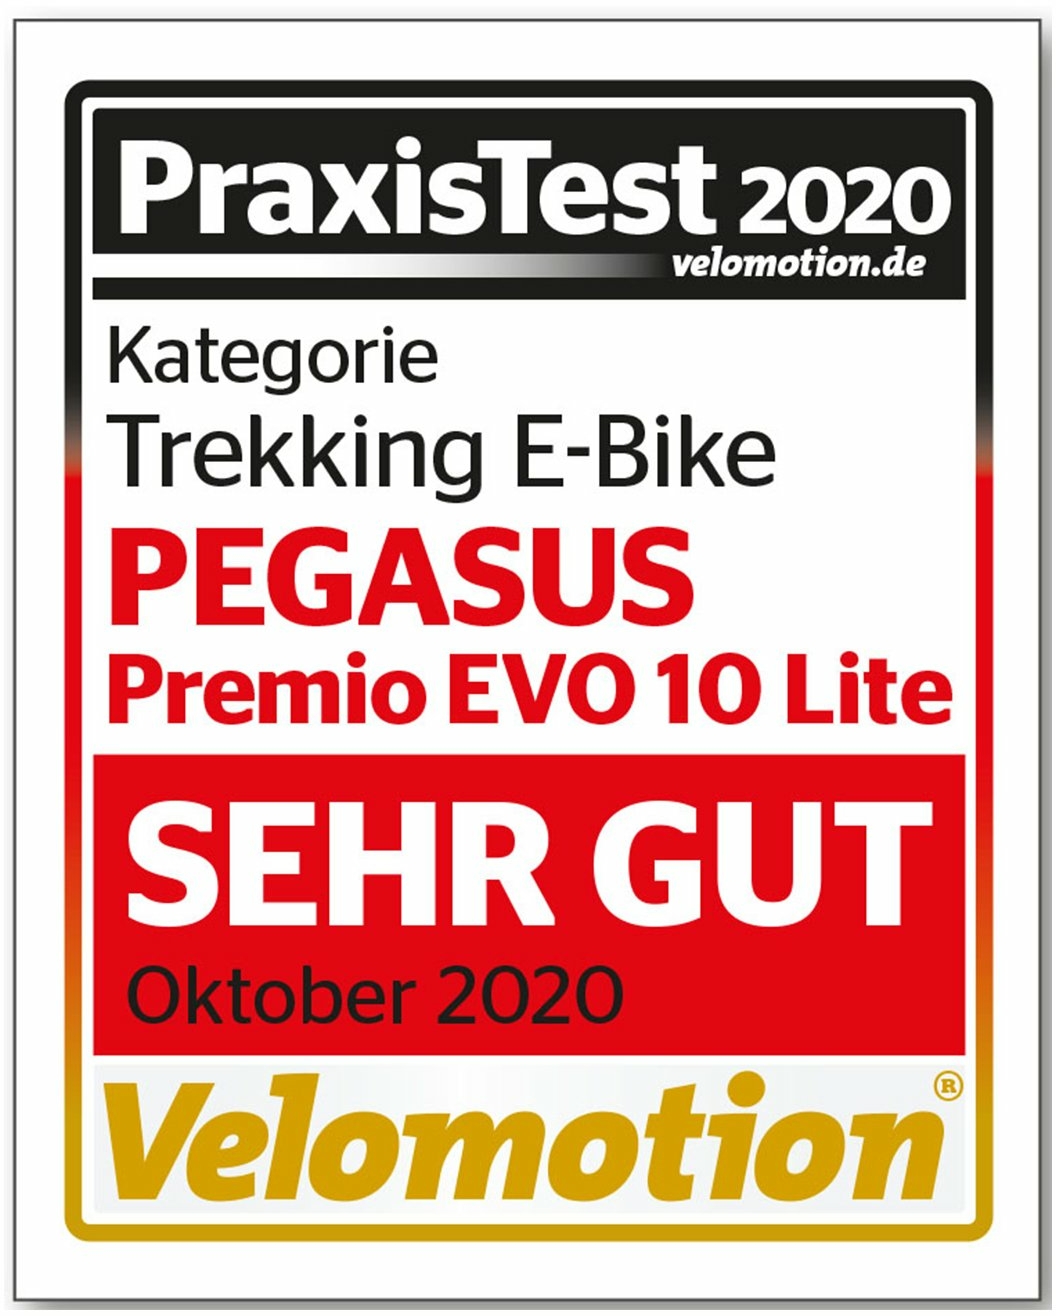 Pegasus Premio Evo 10 Lite (625 Wh), 10 gear derailleur, men's bike, Diamant, model 2020, 28 inches